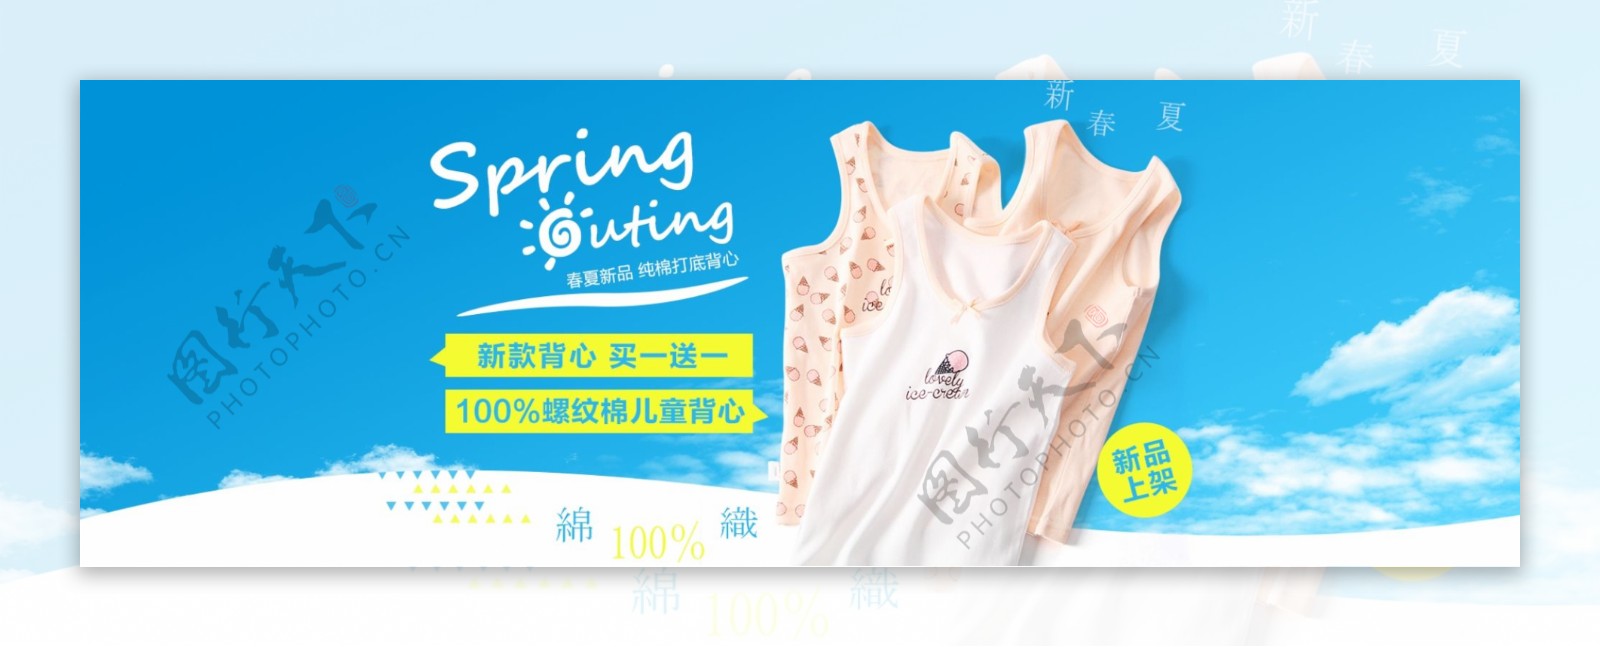 春夏季春季婴儿服装大方海报